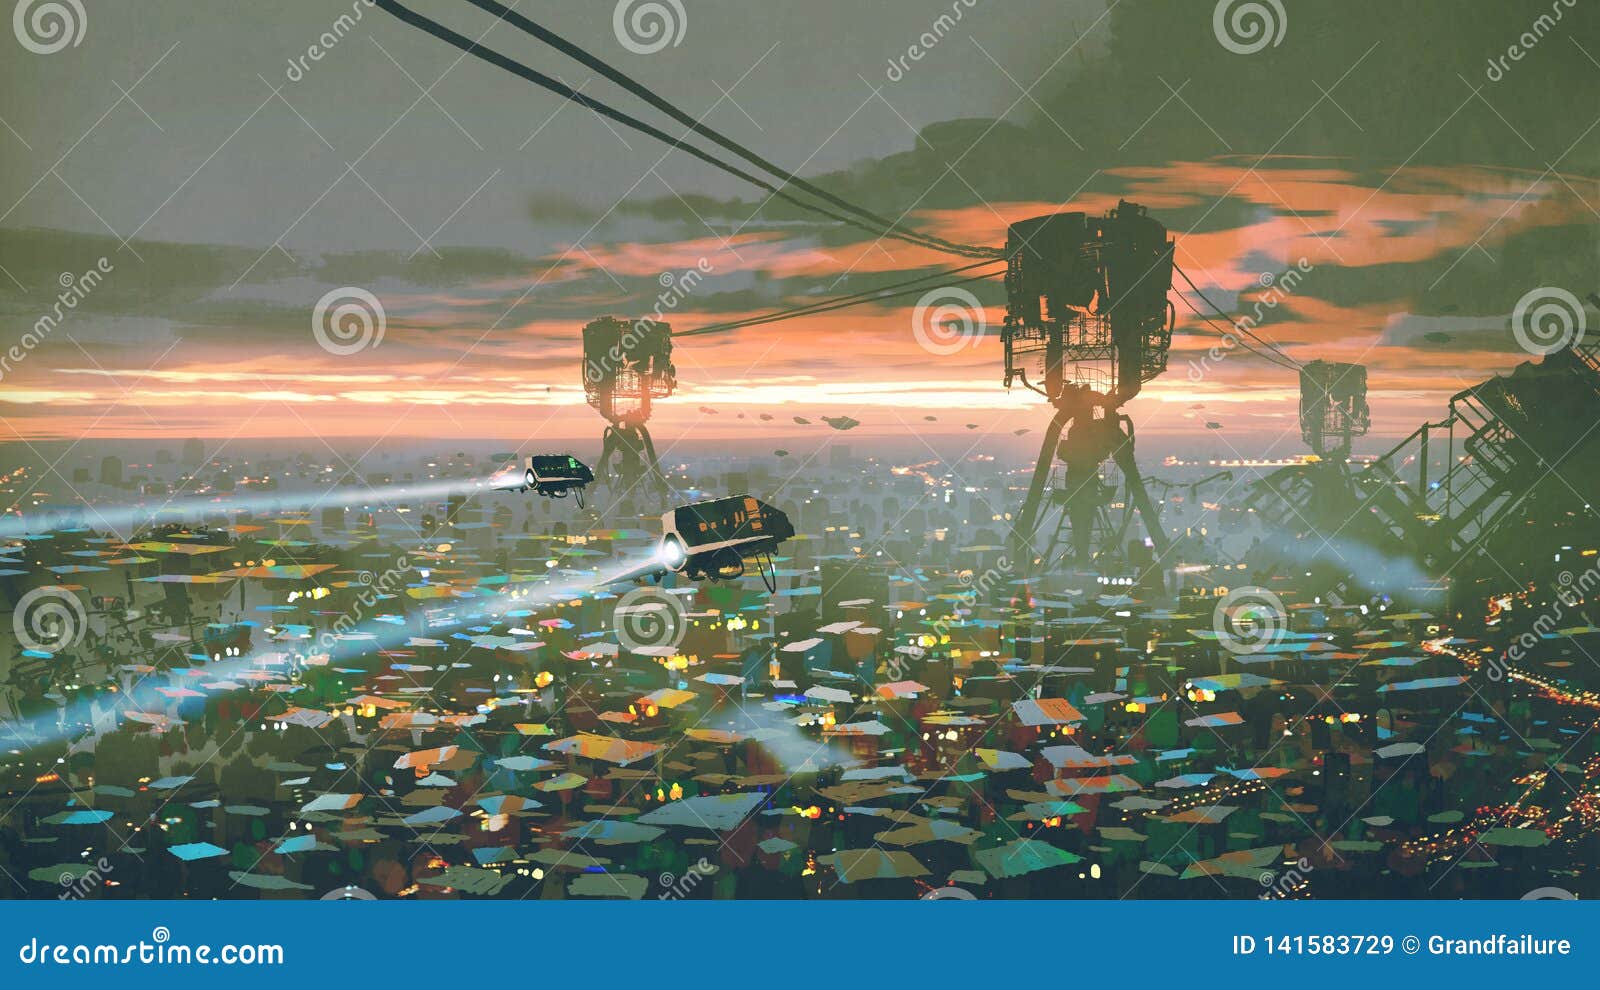 slum city in futuristic world